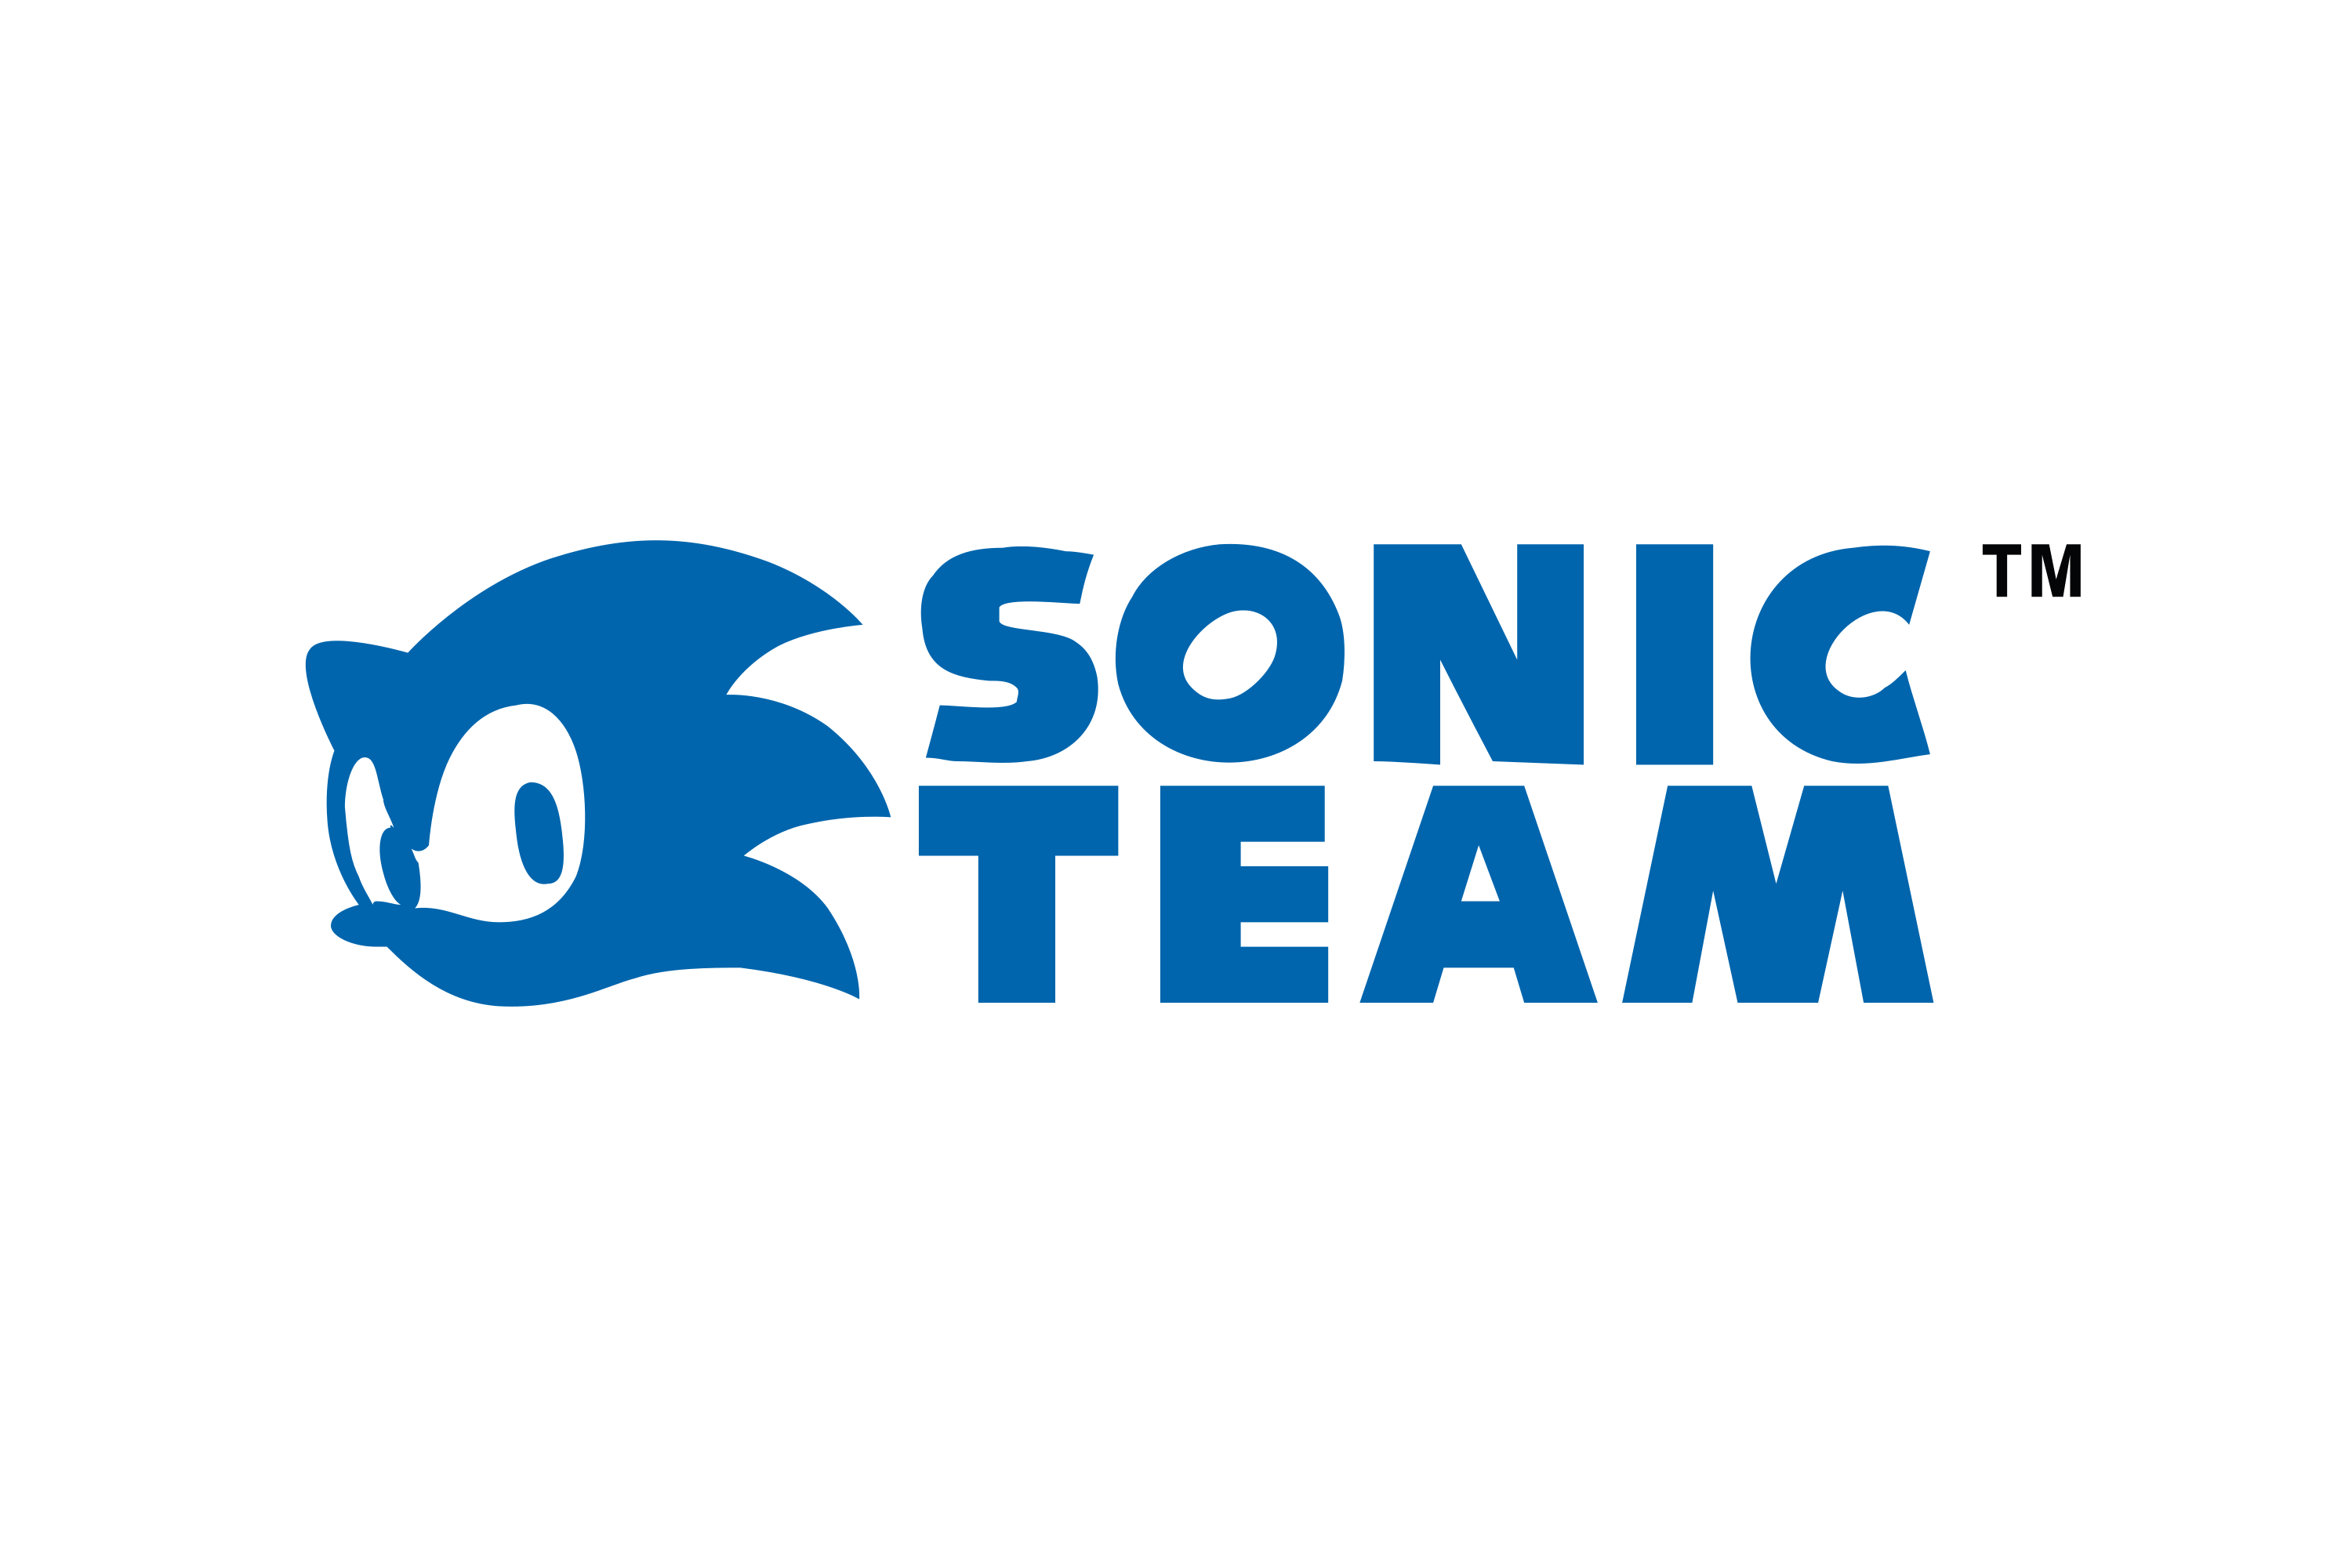 Sega sonic logo png - bapedge